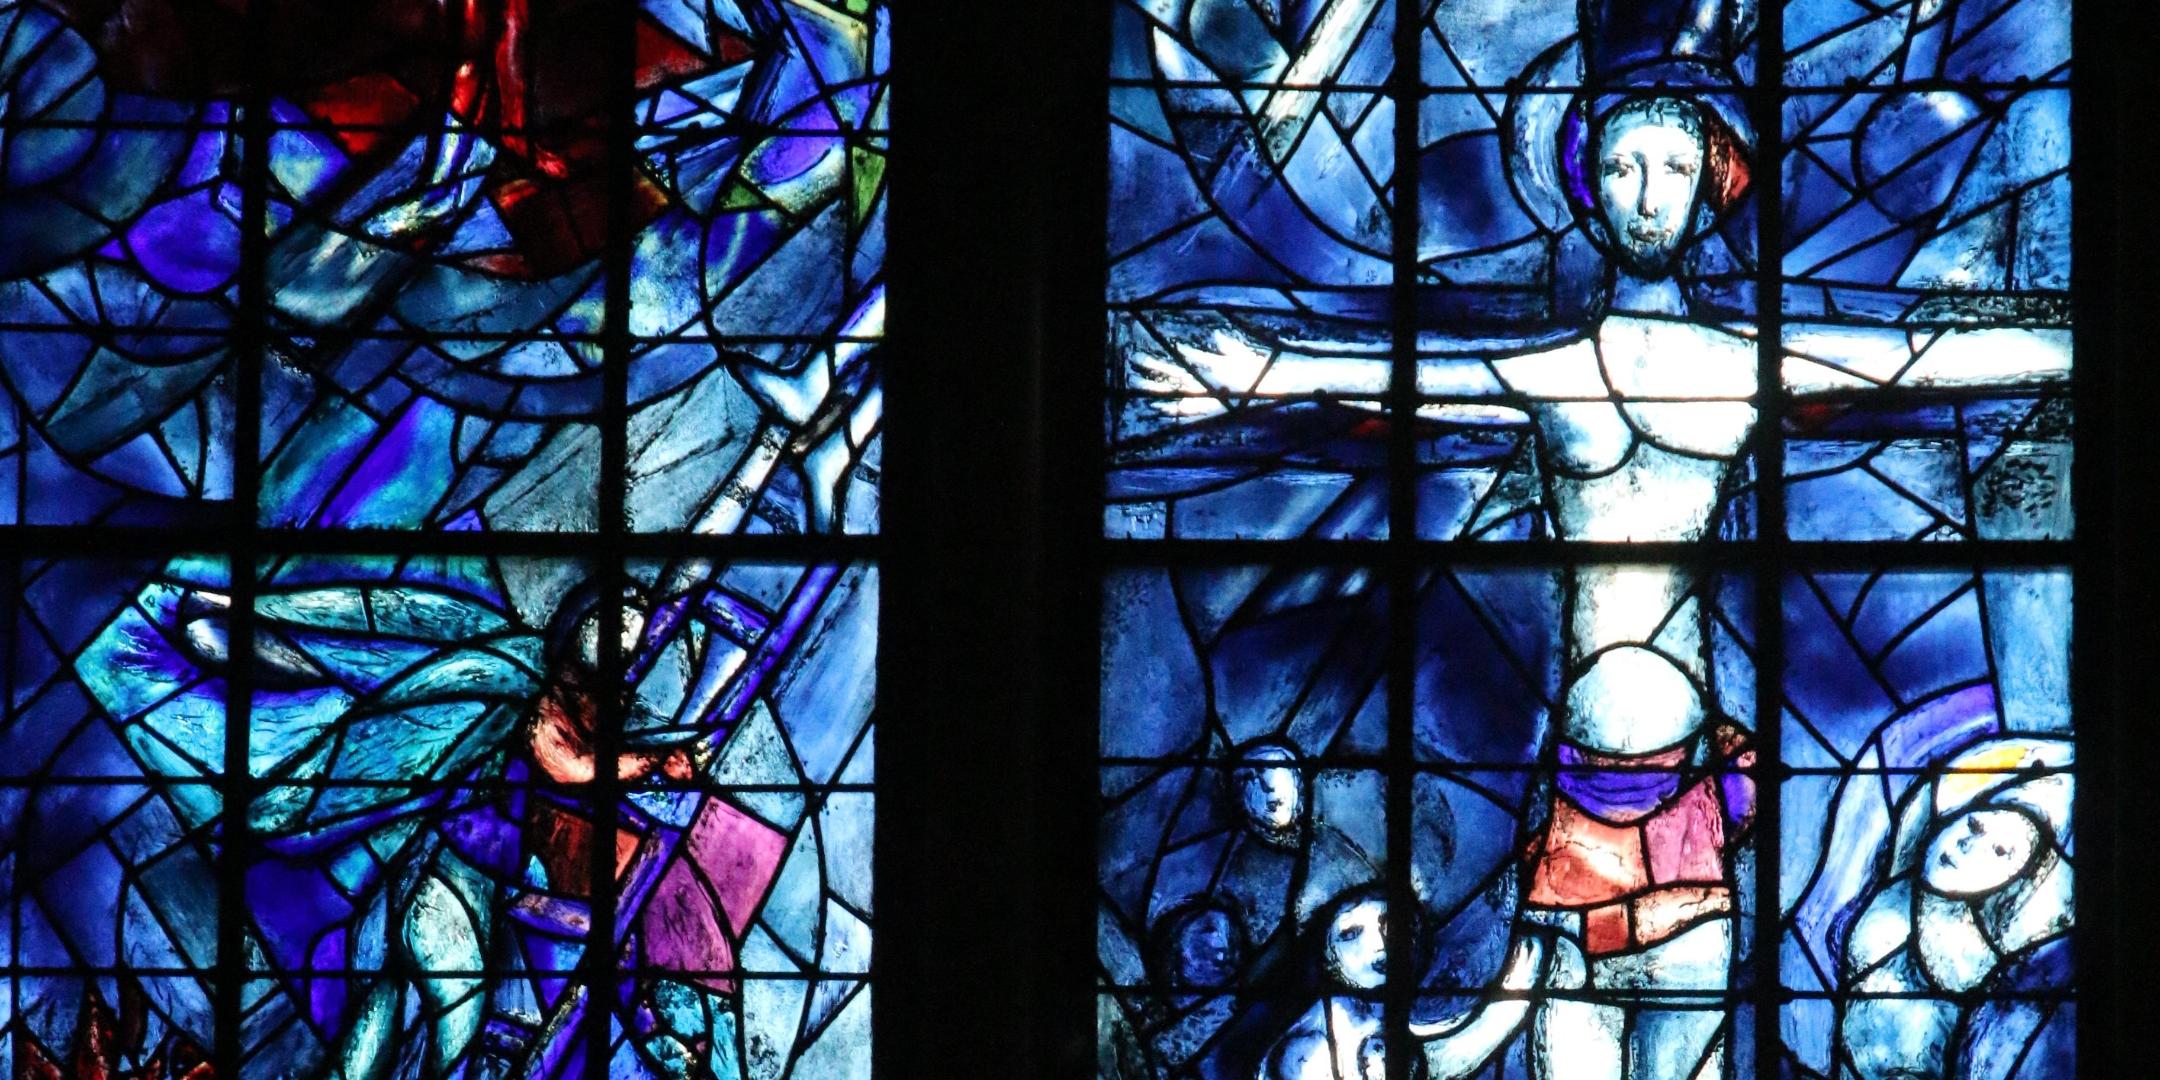 Die Chagall-Fenster in der Mainzer Pfarrkirche St. Stephan sind weithin bekannt: Der Künstler Marc Chagall gestaltete den Fensterzyklus seit den späten 1970er-Jahren und wollte ihn auch als ein Zeichen der jüdisch-deutschen Aussöhnung verstanden wissen.